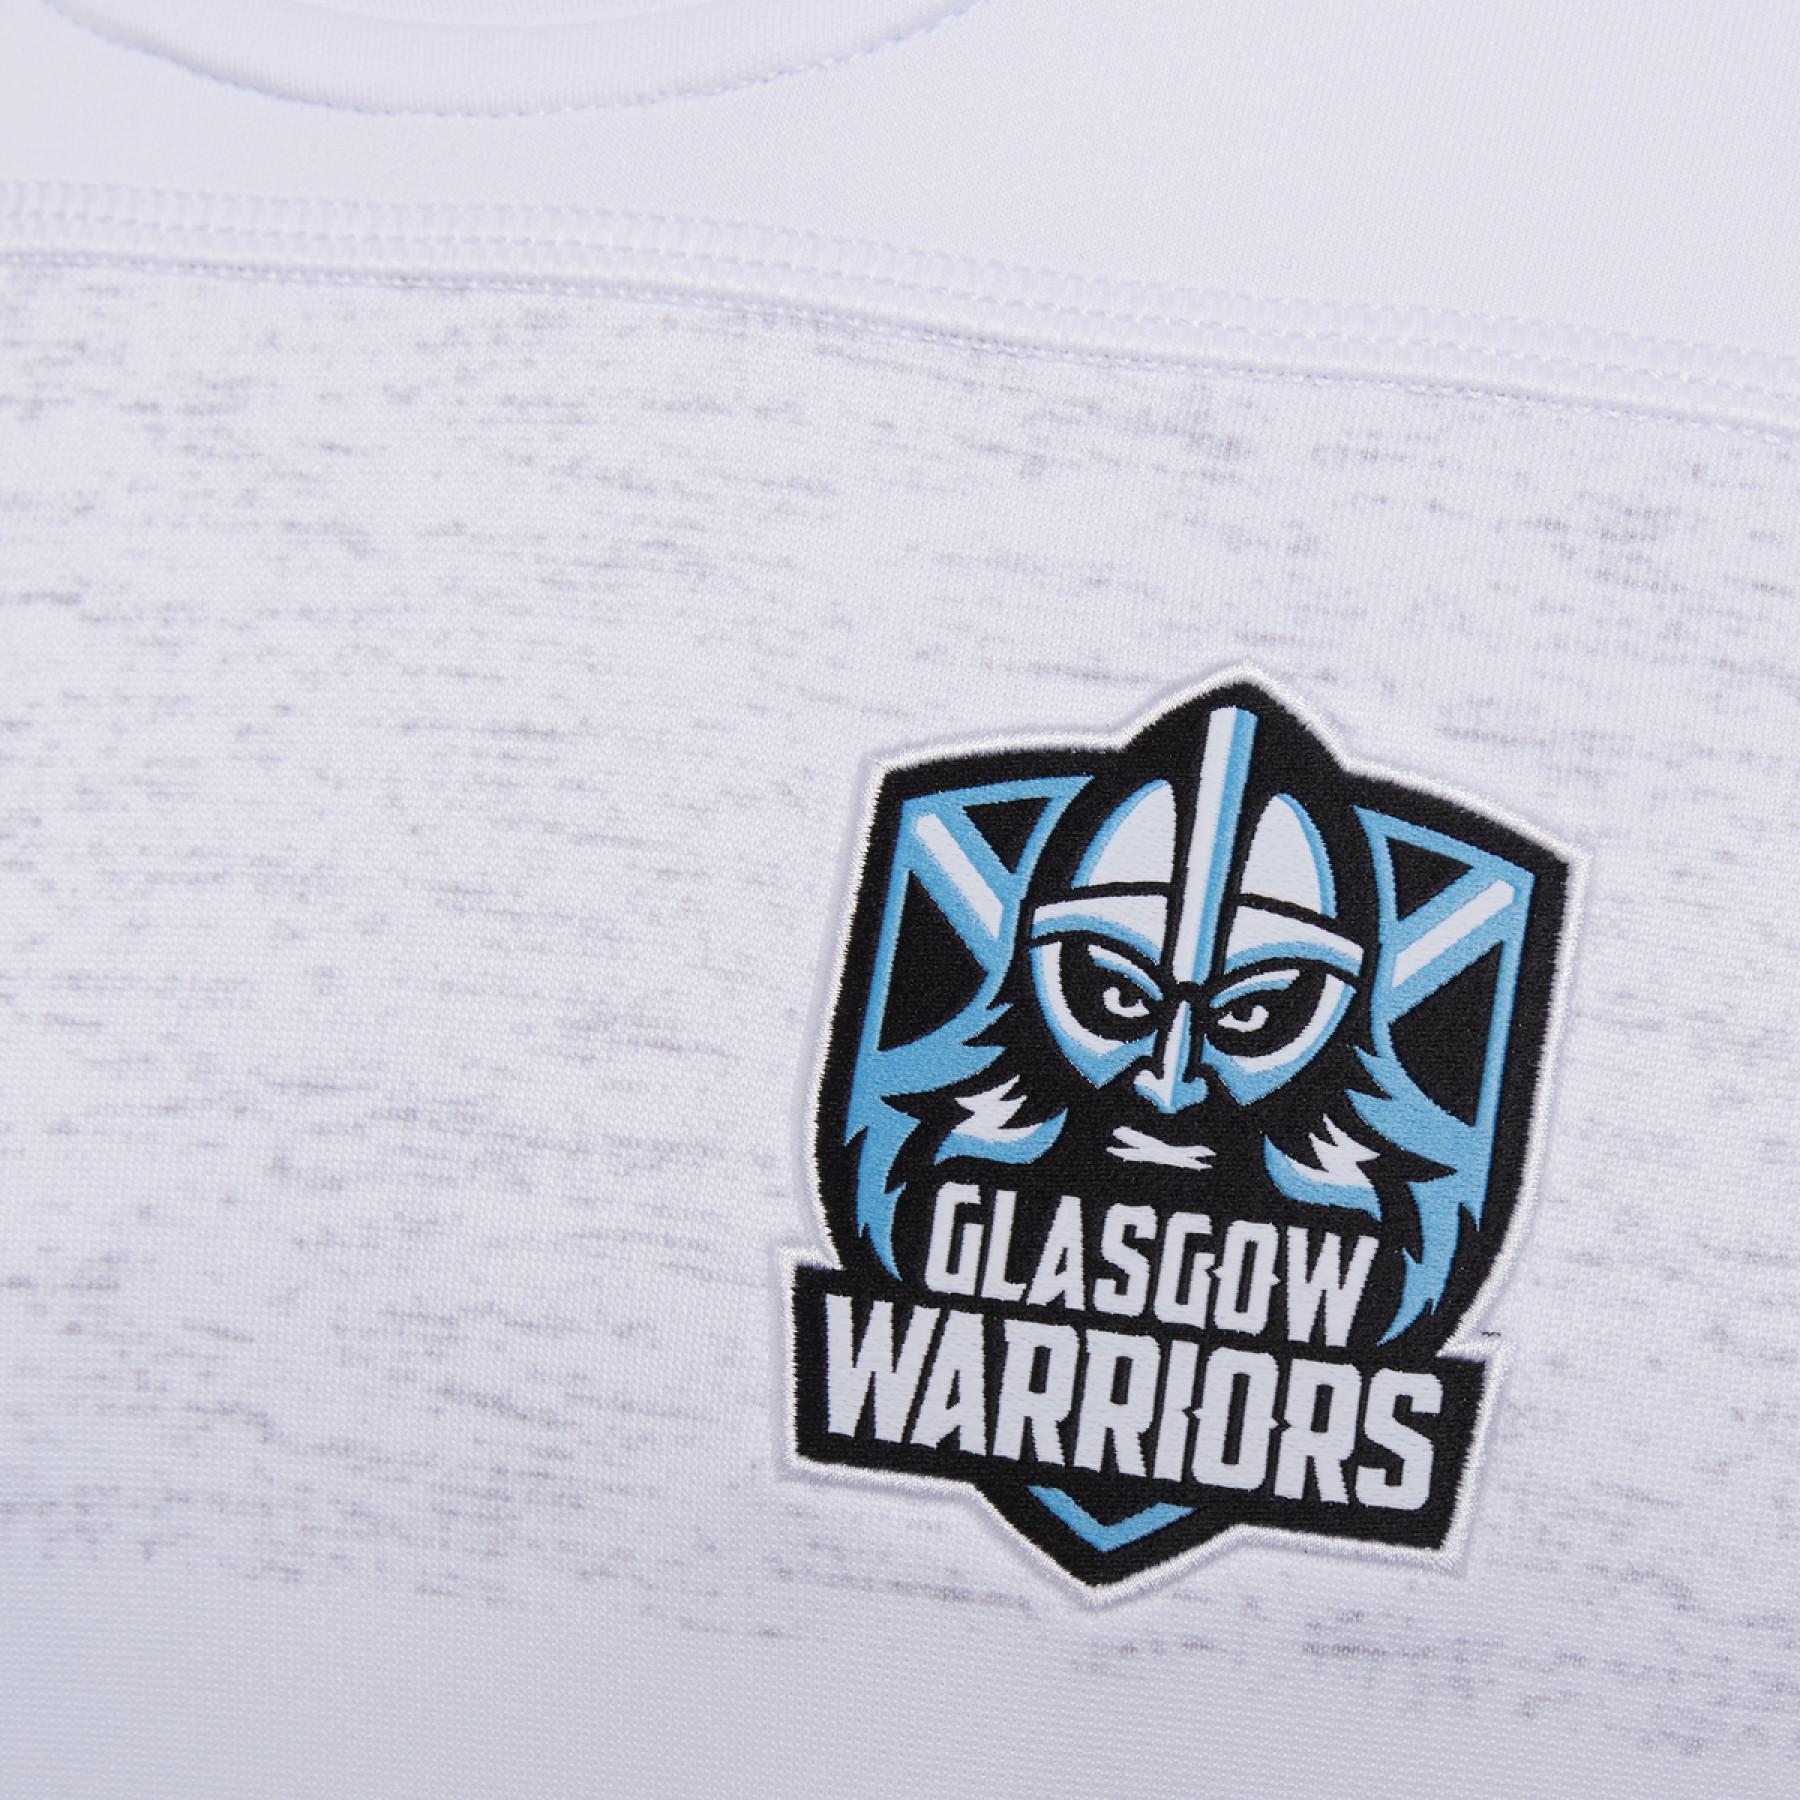 Maillot extérieur Glasgow warriors 2020/21